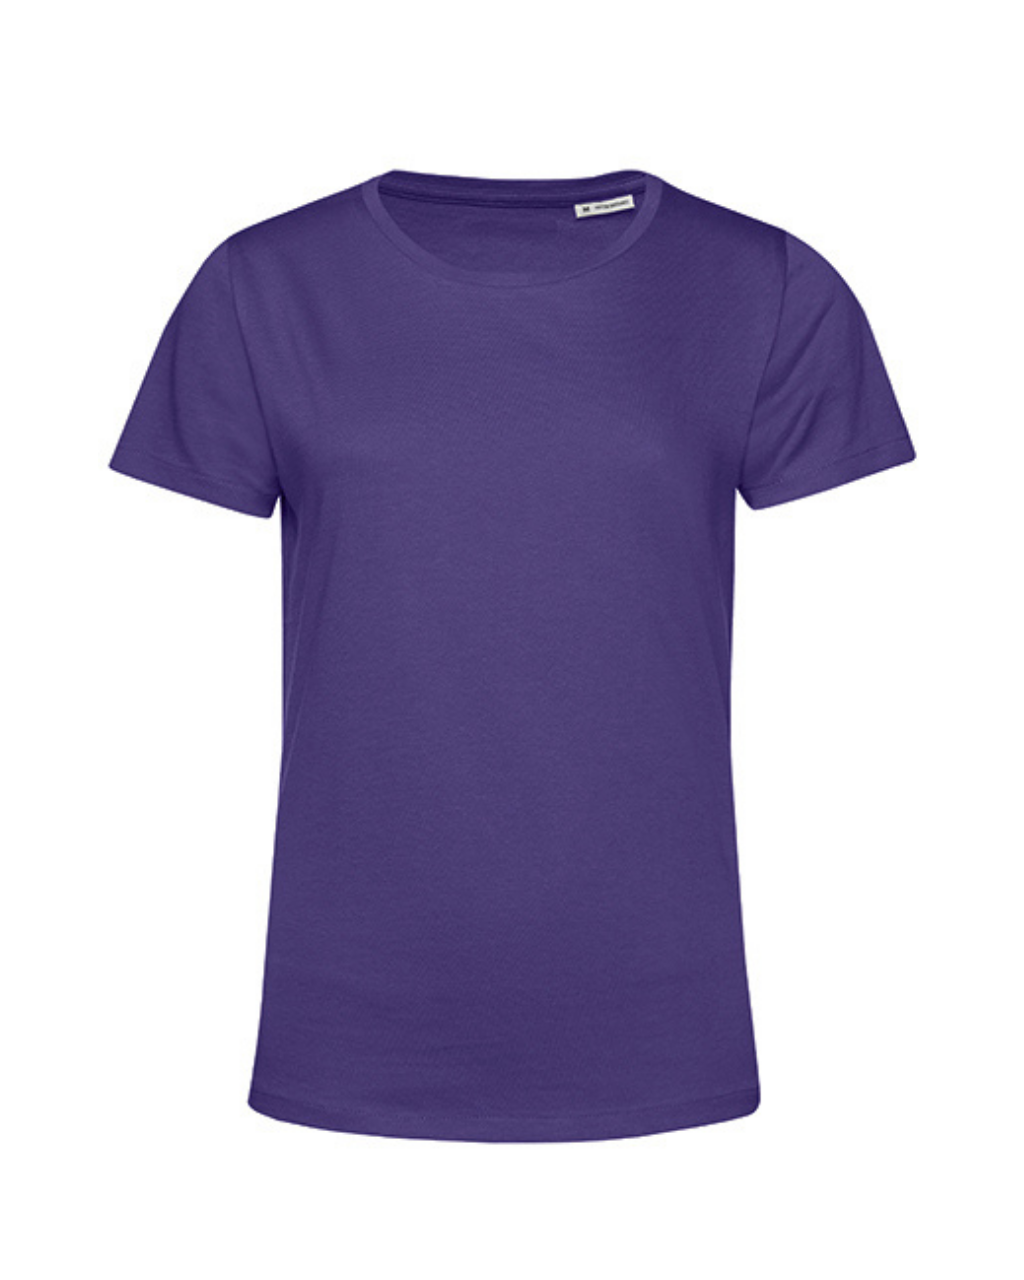 Футболка фиолетовая купить. Футболка женская e150 черная. Фиолетовая футболка. Фиолетовая футболка женская. Сиреневая футболка женская.